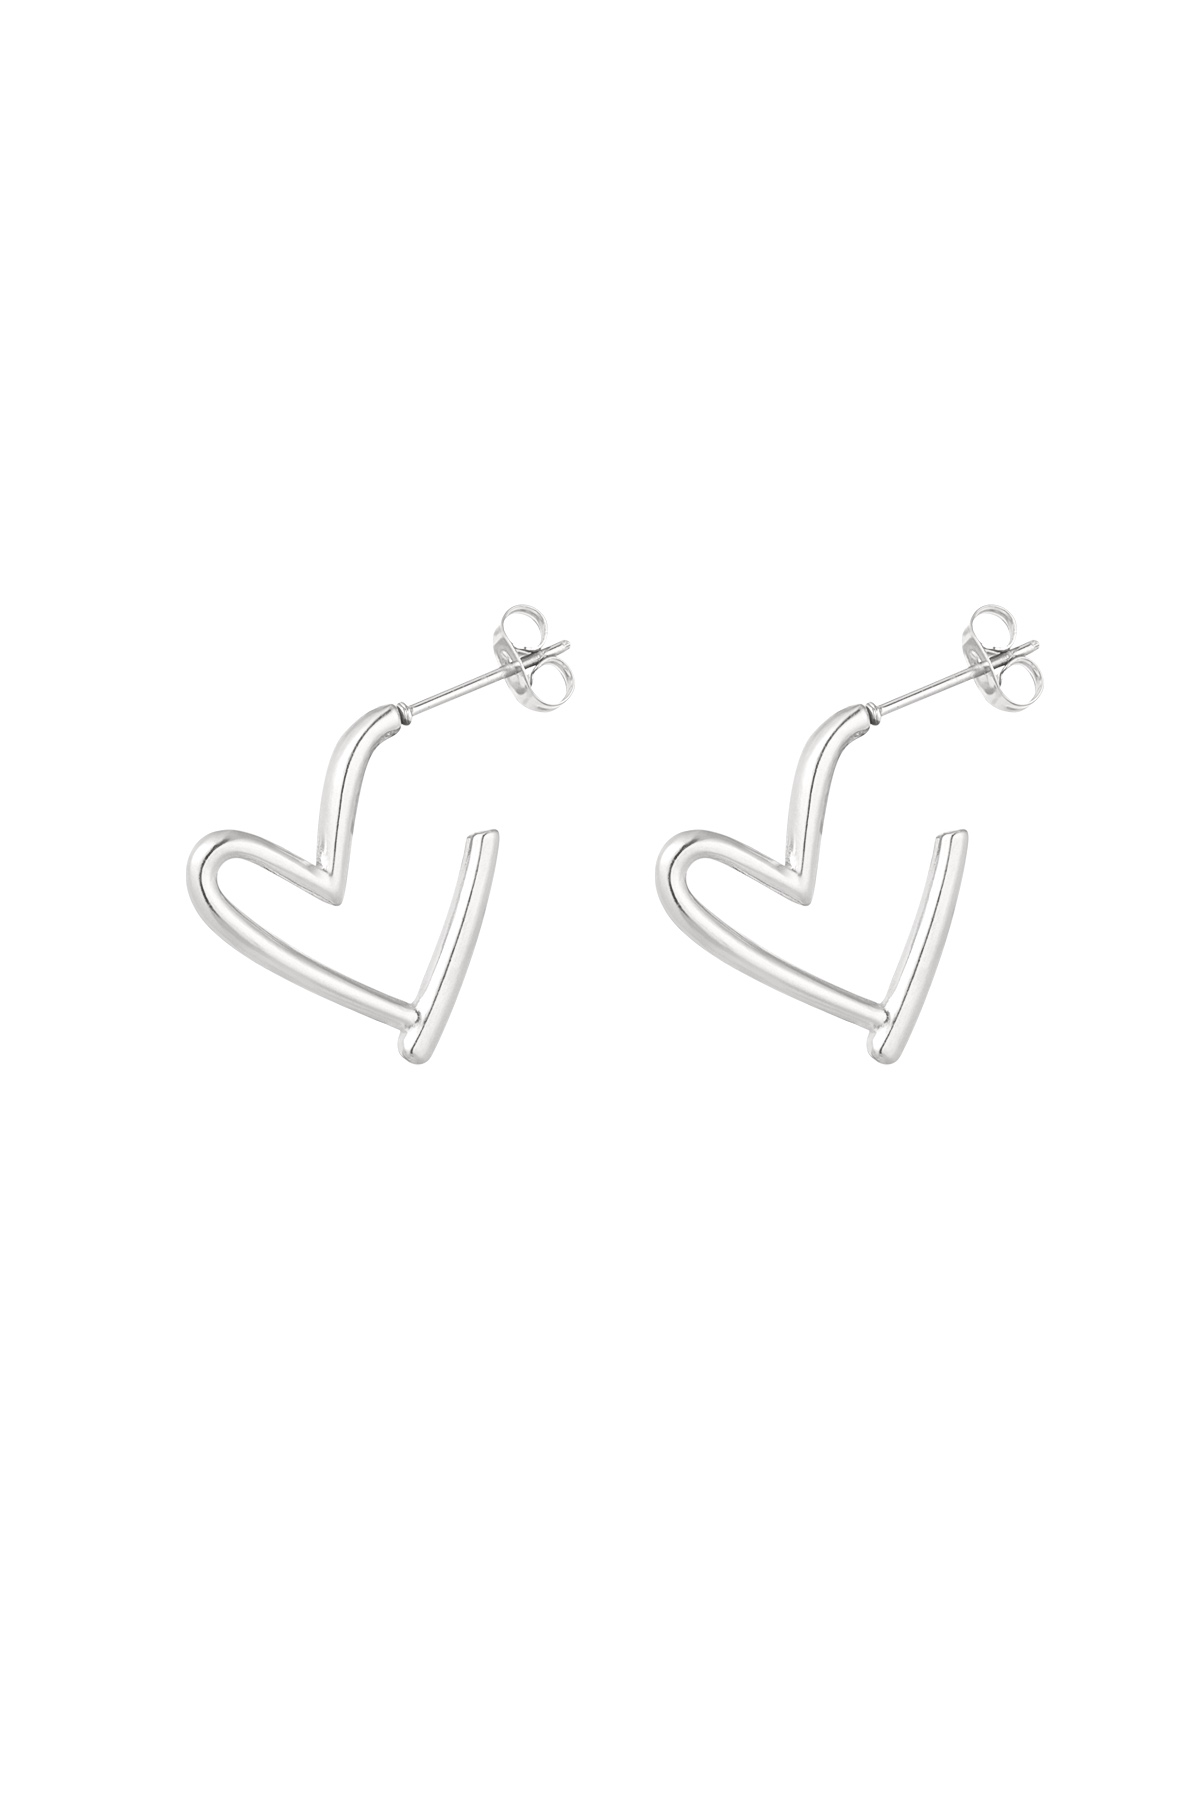 Earrings fall in love - silver